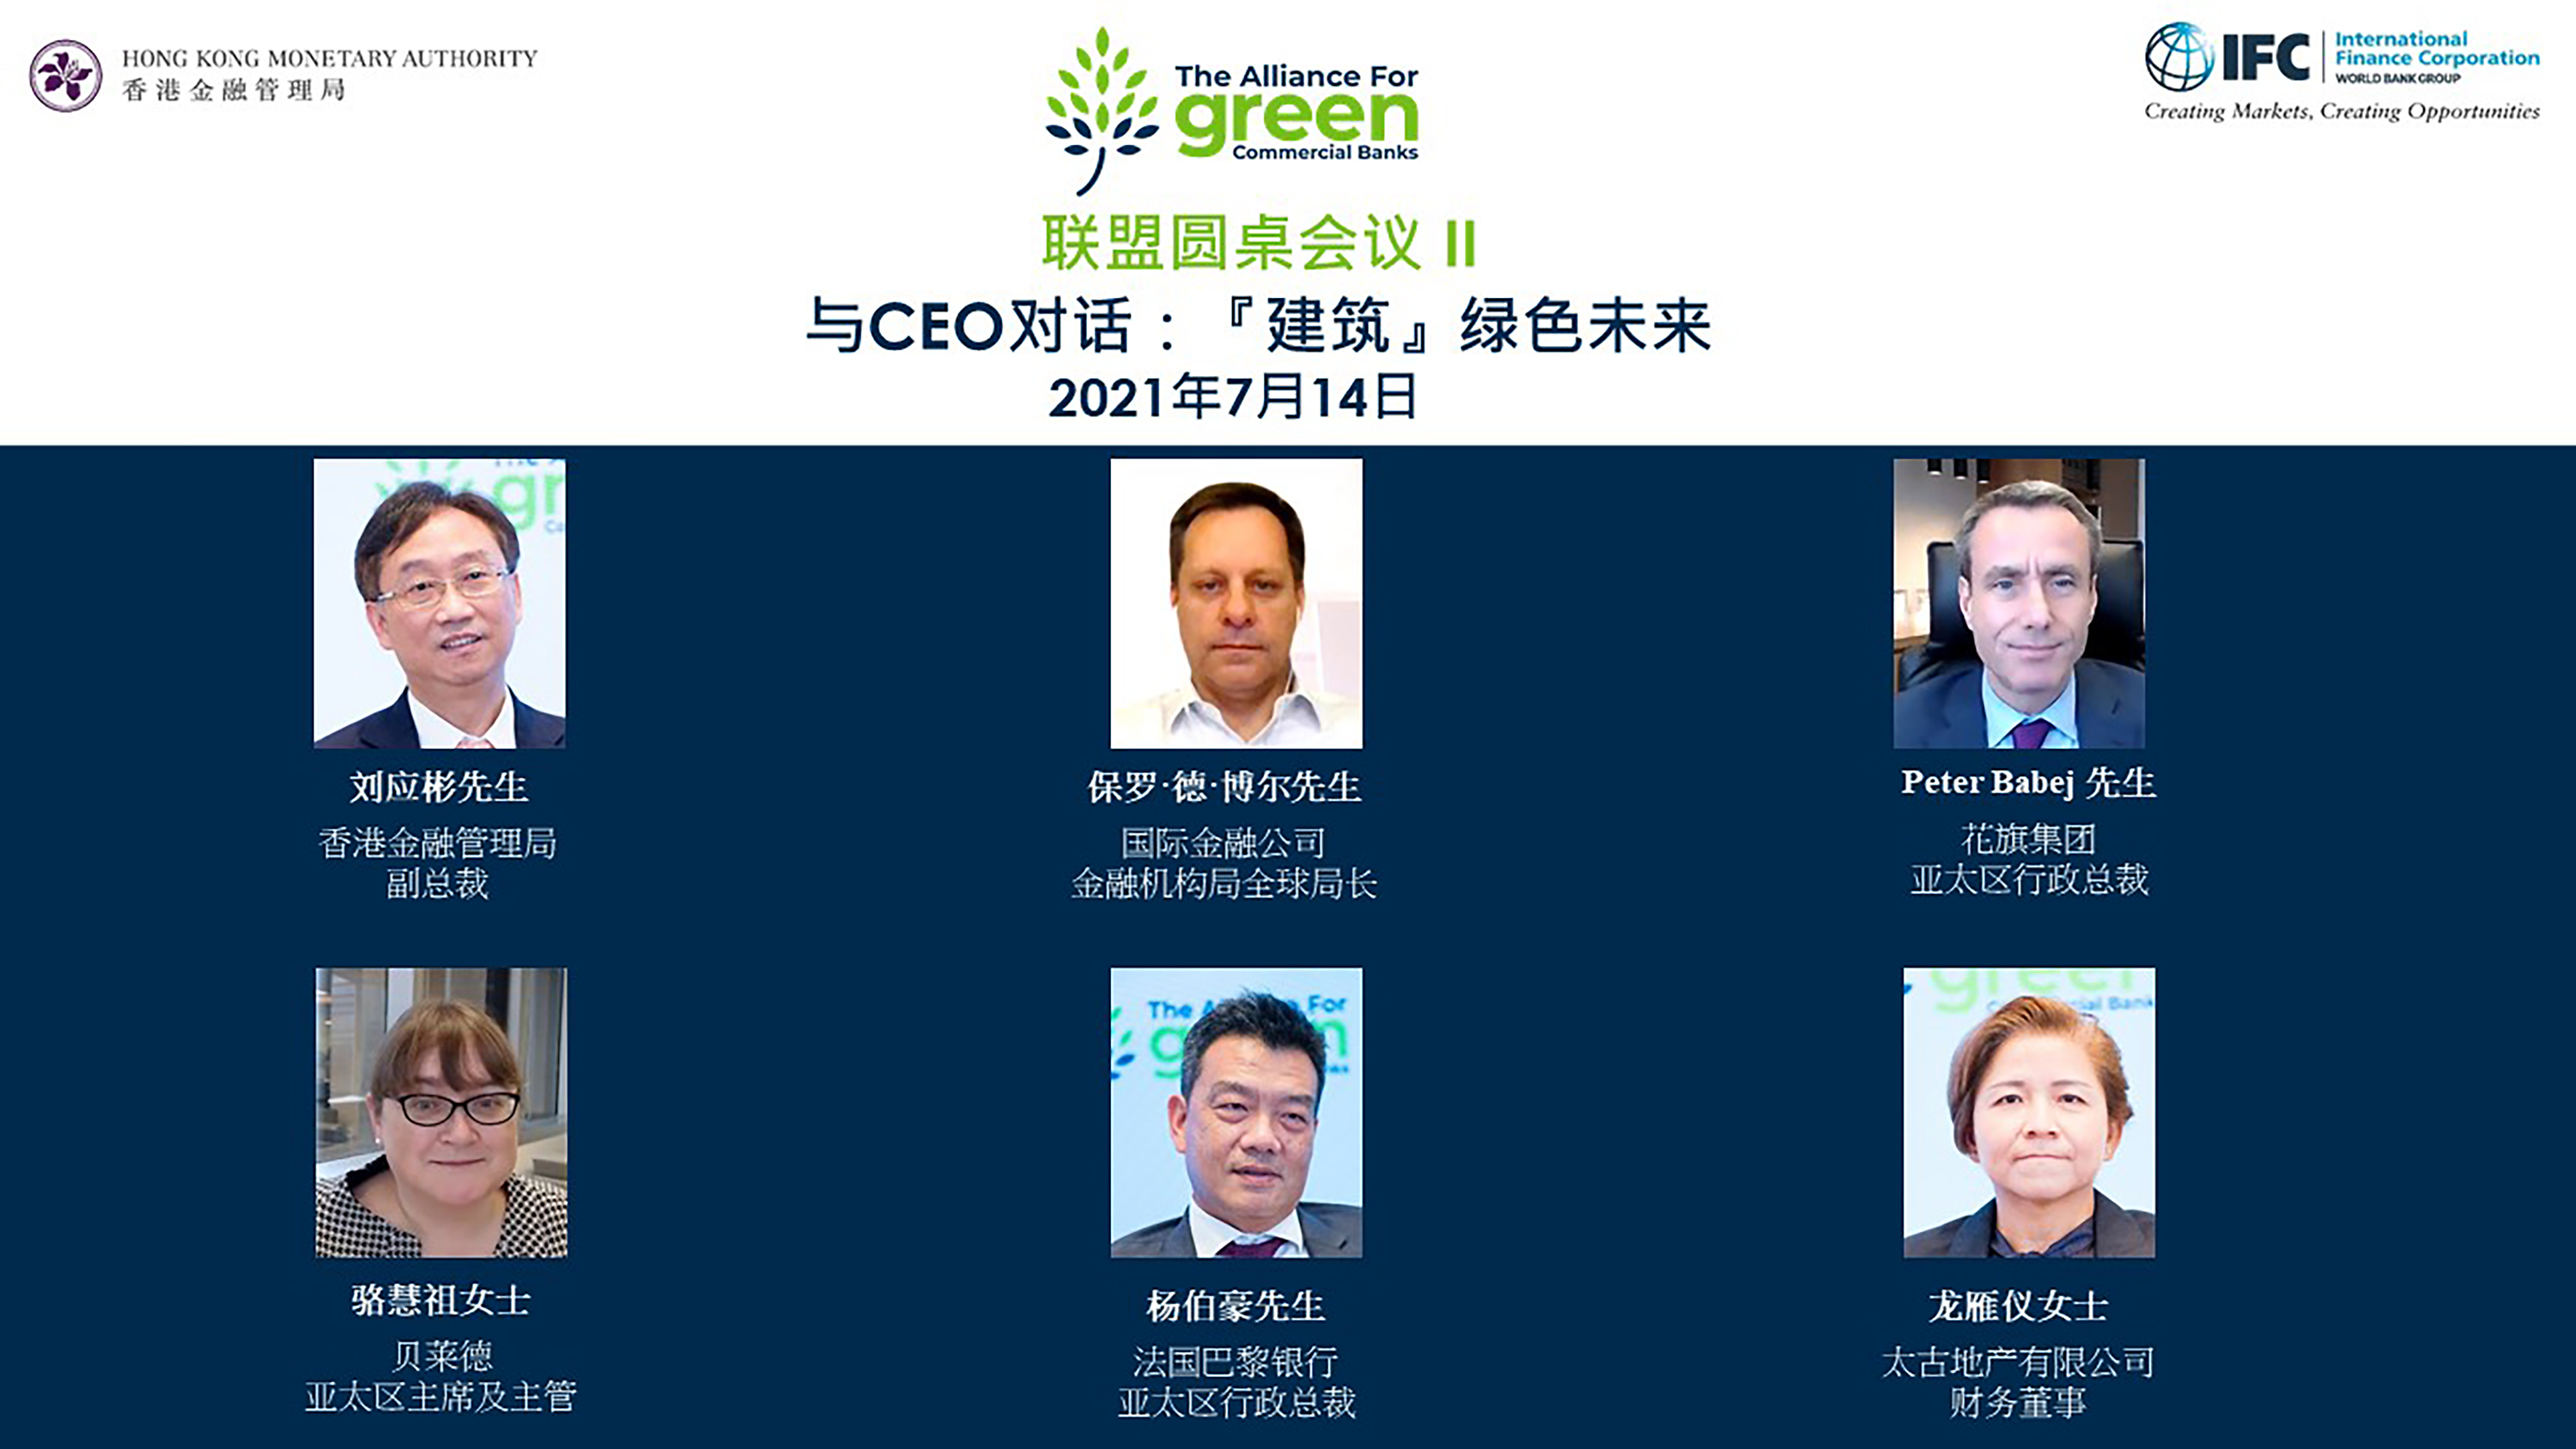 「绿色商业银行联盟」于今日（2021年4月27日）举办首场网上圆桌会议「与CEO对话：绿色银行转型的机遇」。是次活动由IFC运营高级副总裁斯蒂芬妮·冯·弗里德堡女士（第一行中）的开幕致辞，以及中国金融学会绿色金融专业委员会主任马骏博士（第一行右）的主题演讲展开。圆桌会议由金管局总裁余伟文先生（第一行左）主持，与会者包括香港上海汇丰银行有限公司副主席兼行政总裁王冬胜先生（第二行左）；中国银行（香港）有限公司副董事长兼总裁孙煜先生（第二行中）; 及IFC 亚太地区副总裁阿方索·加西亚·莫拉先生（第二行右）。